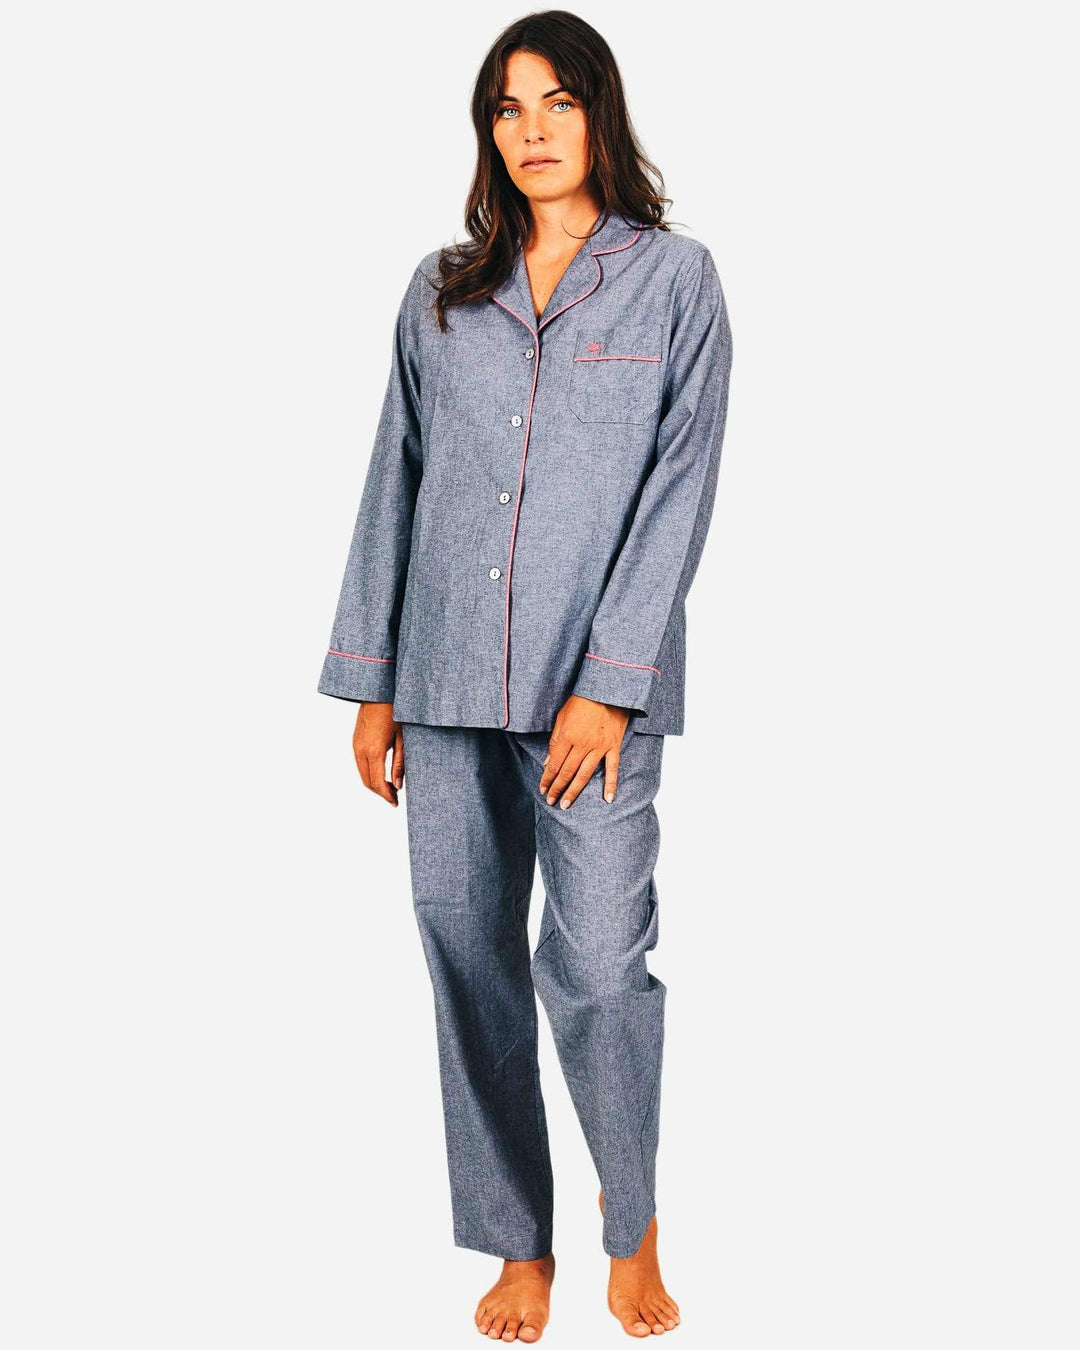 Womens cotton pyjamas set - Chambray black